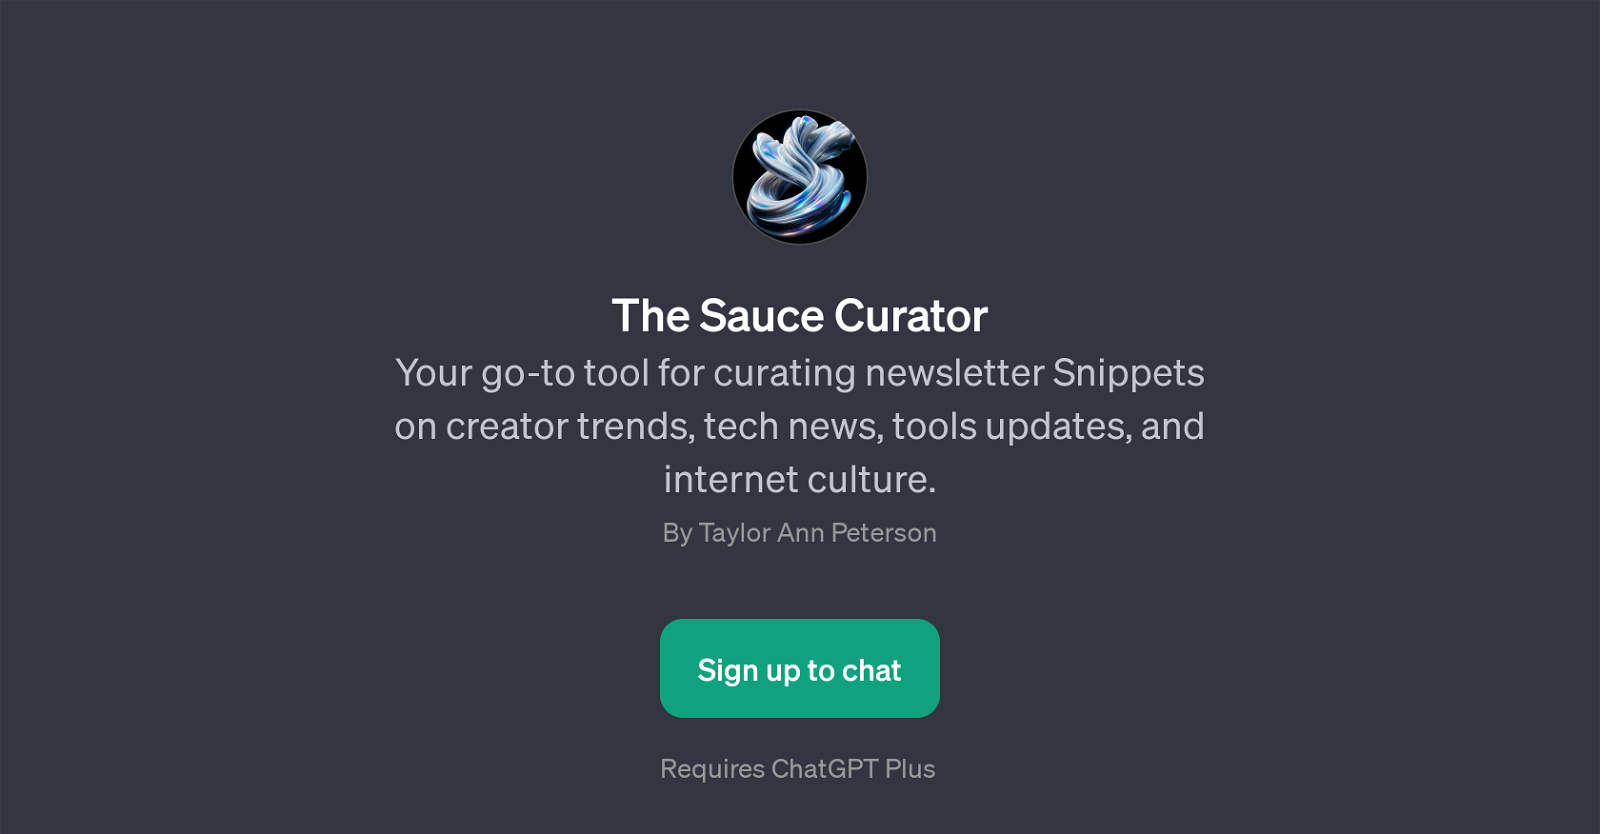 The Sauce Curator website